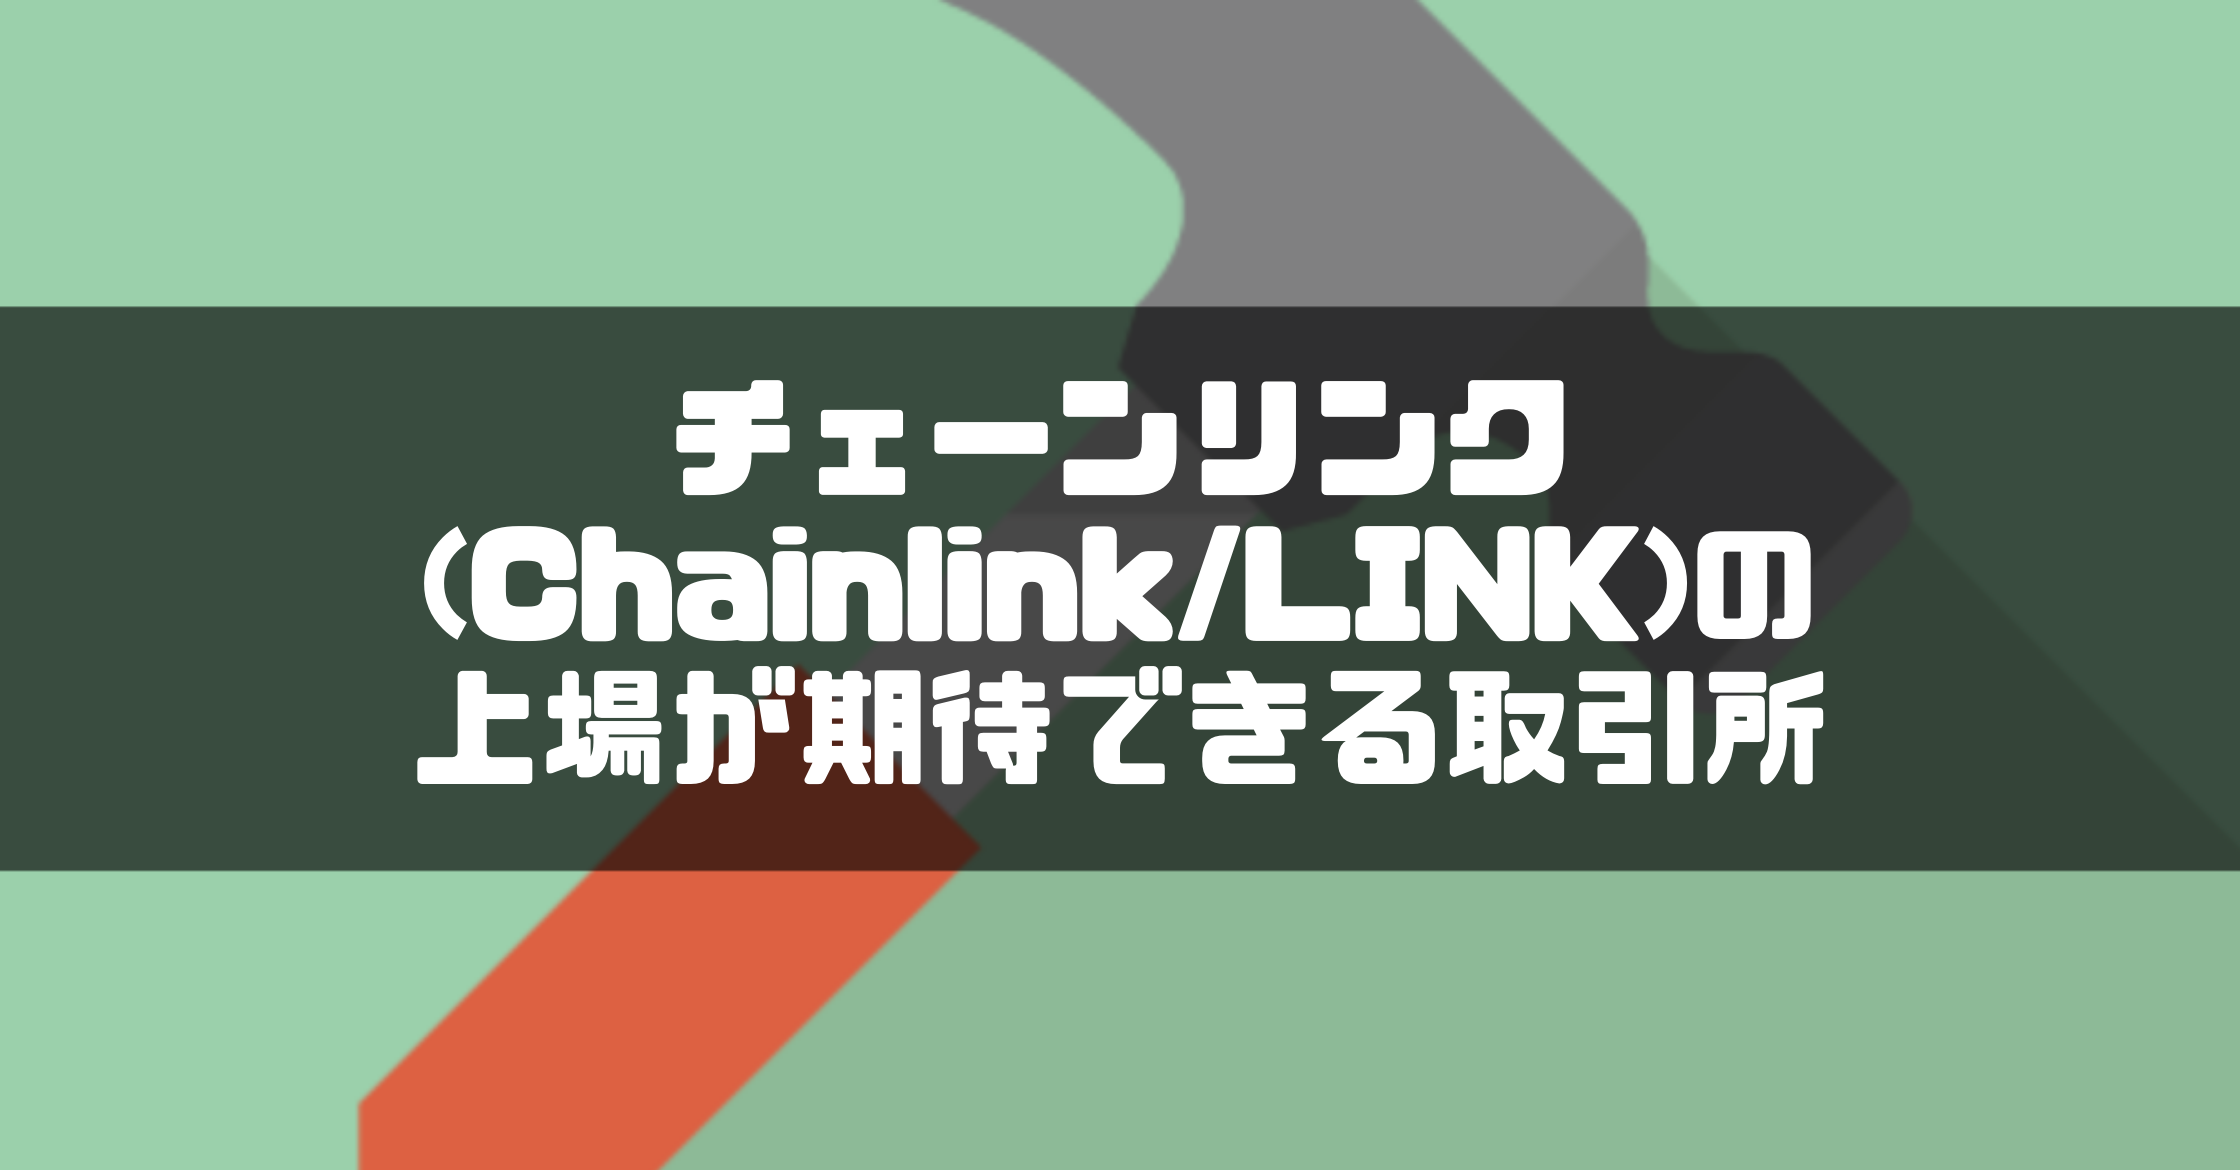 チェーンリンク(Chainlink/LINK)の上場が期待できる取引所